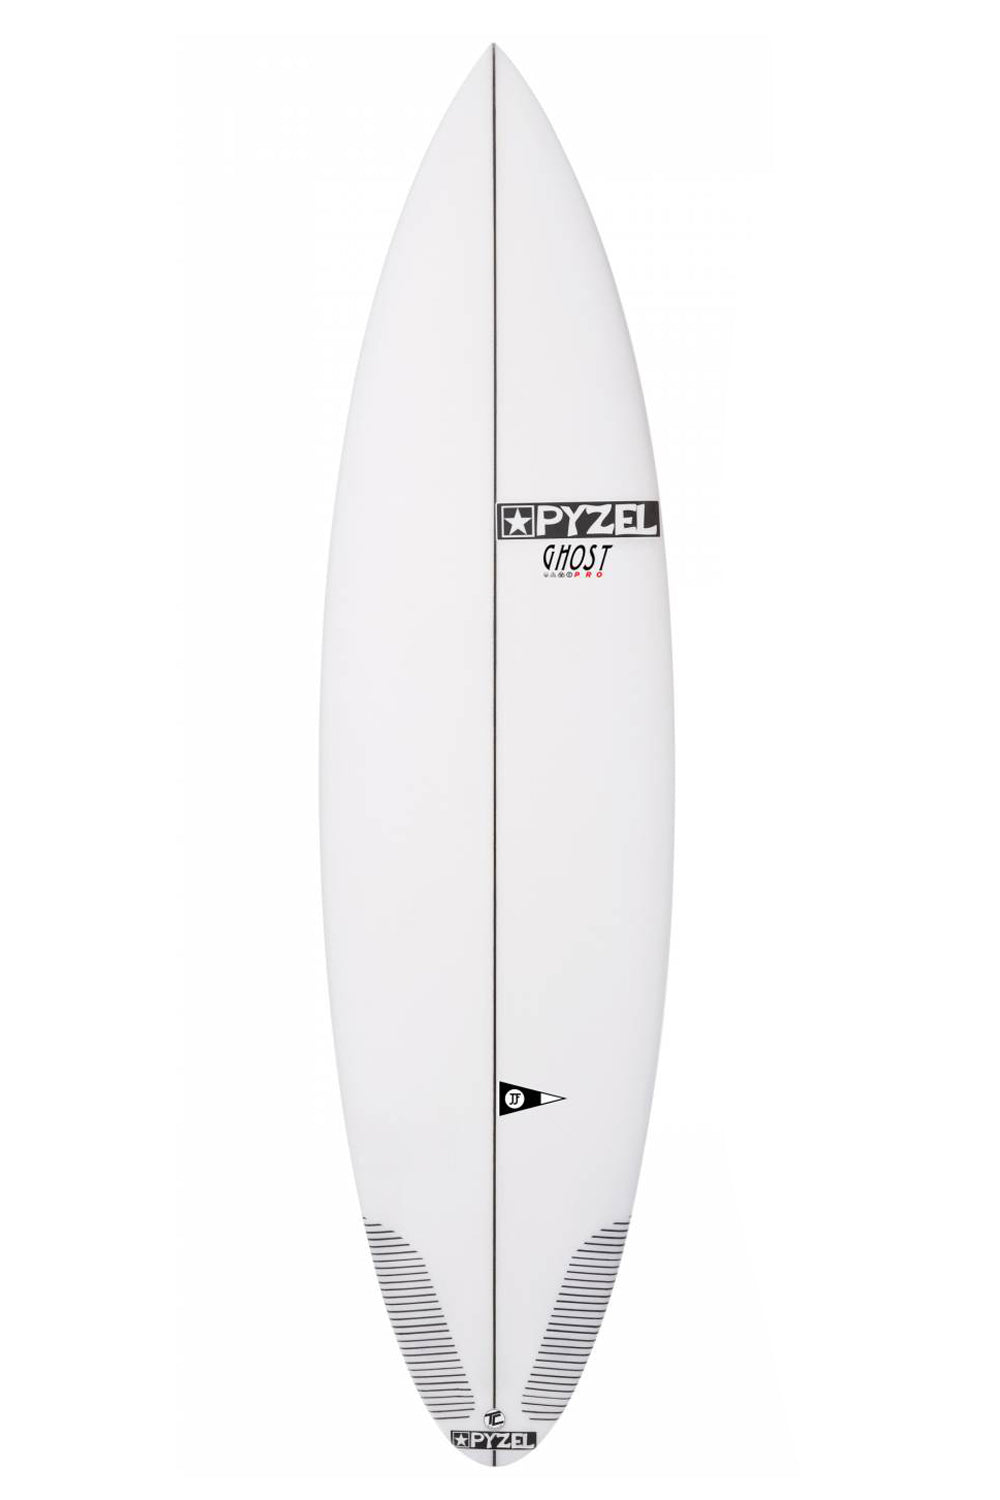 Pyzel Ghost Pro Surfboard